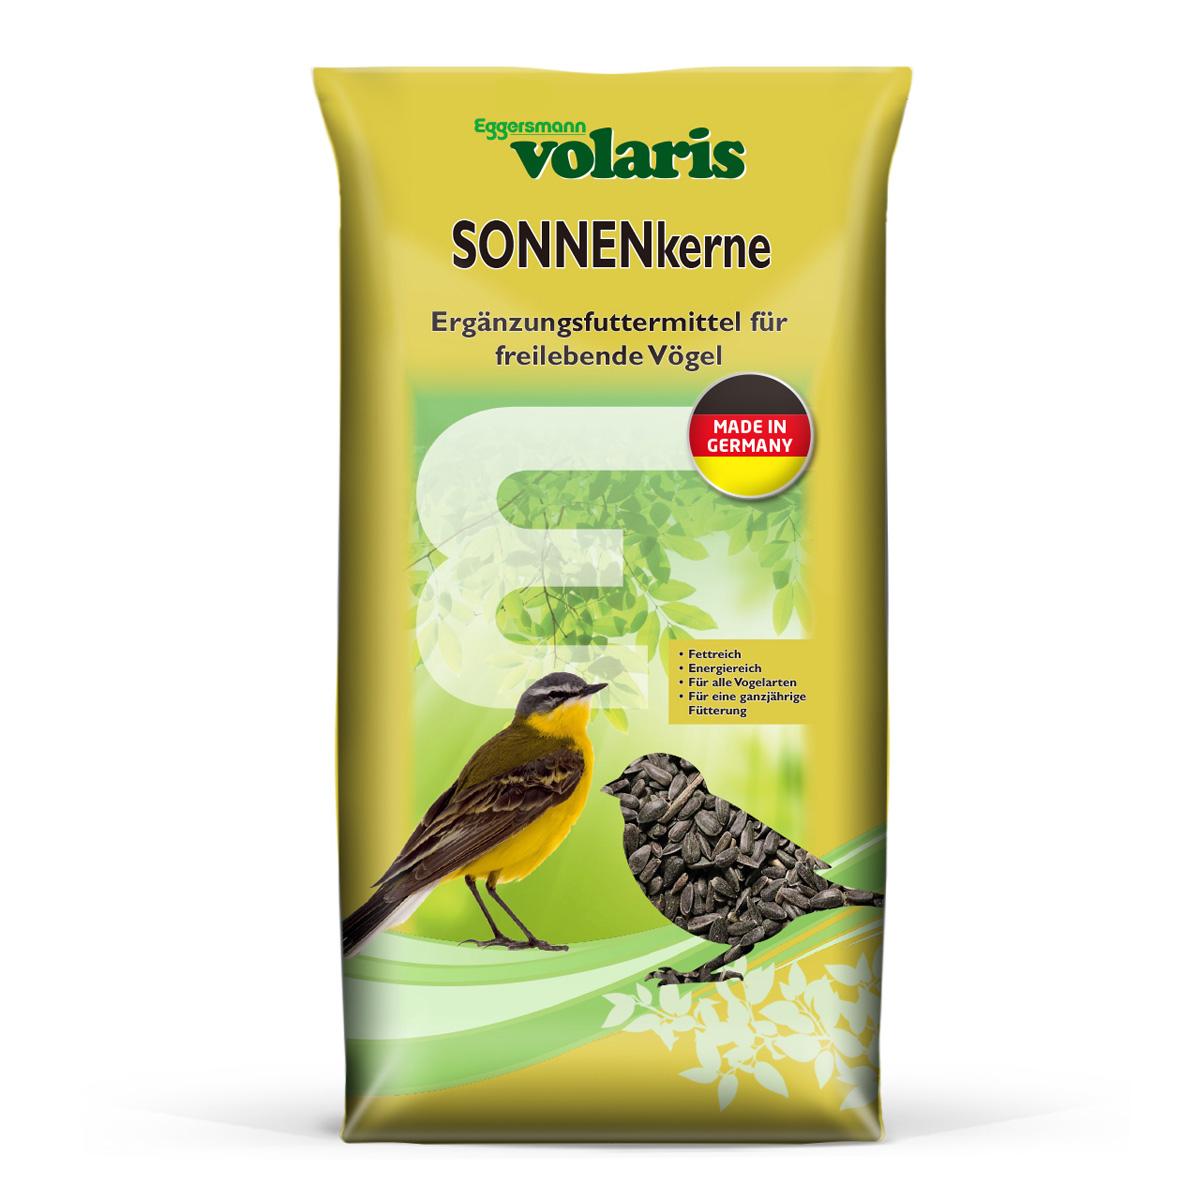 Eggersmann volaris - SONNENkerne 20 kg